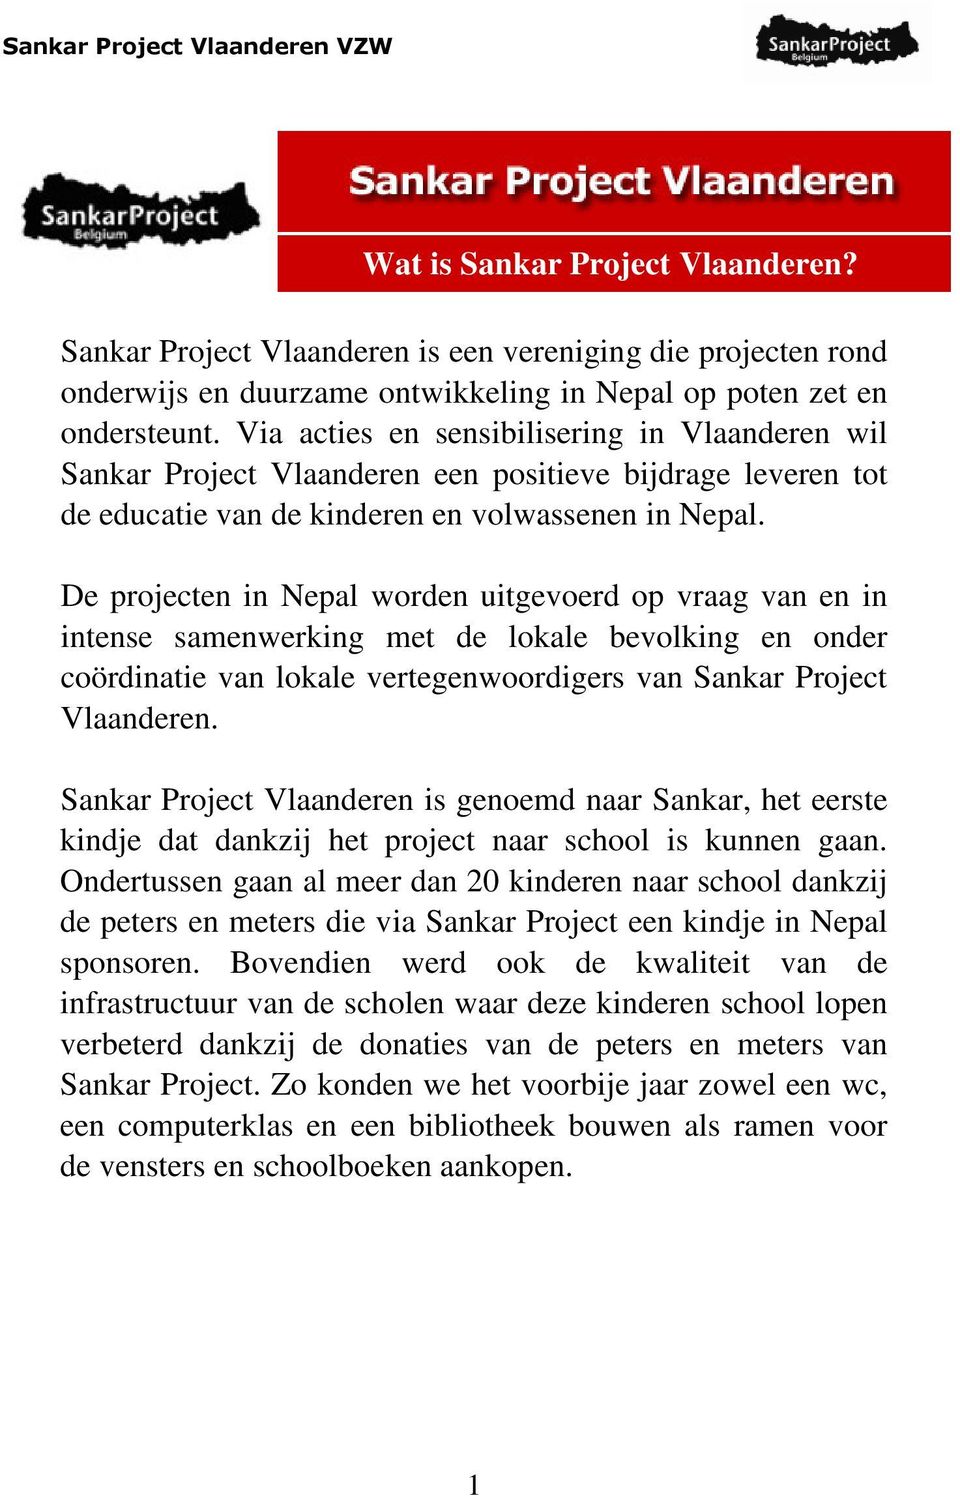 De projecten in Nepal worden uitgevoerd op vraag van en in intense samenwerking met de lokale bevolking en onder coördinatie van lokale vertegenwoordigers van Sankar Project Vlaanderen.